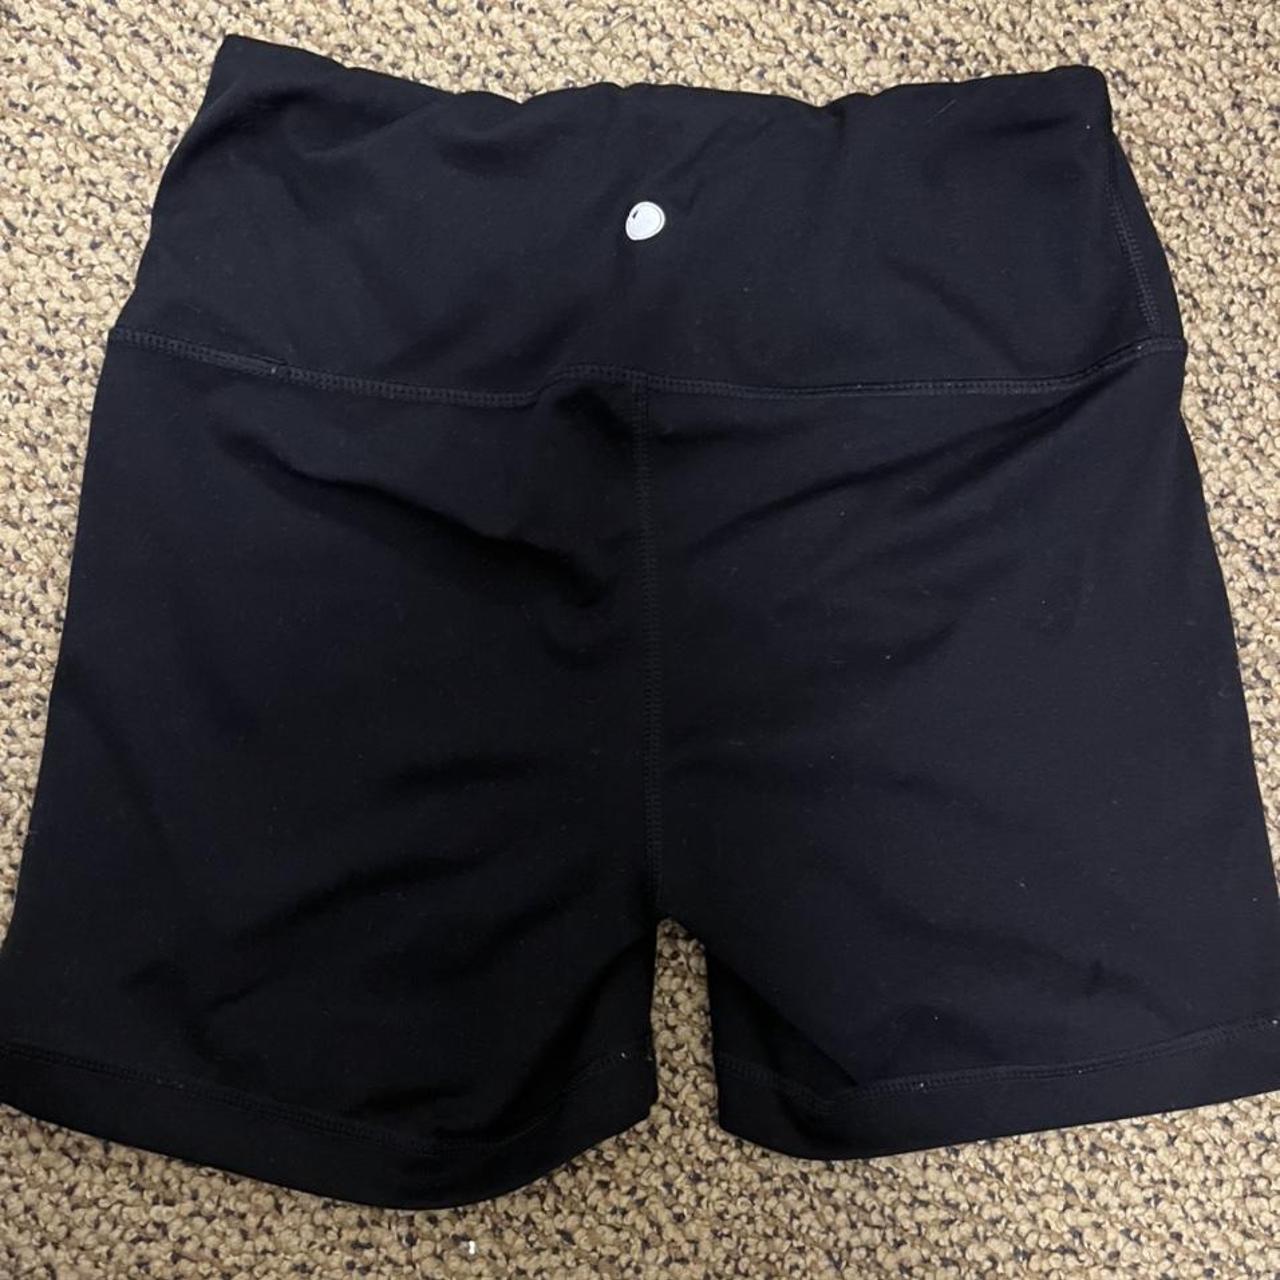 black workout shorts - Depop